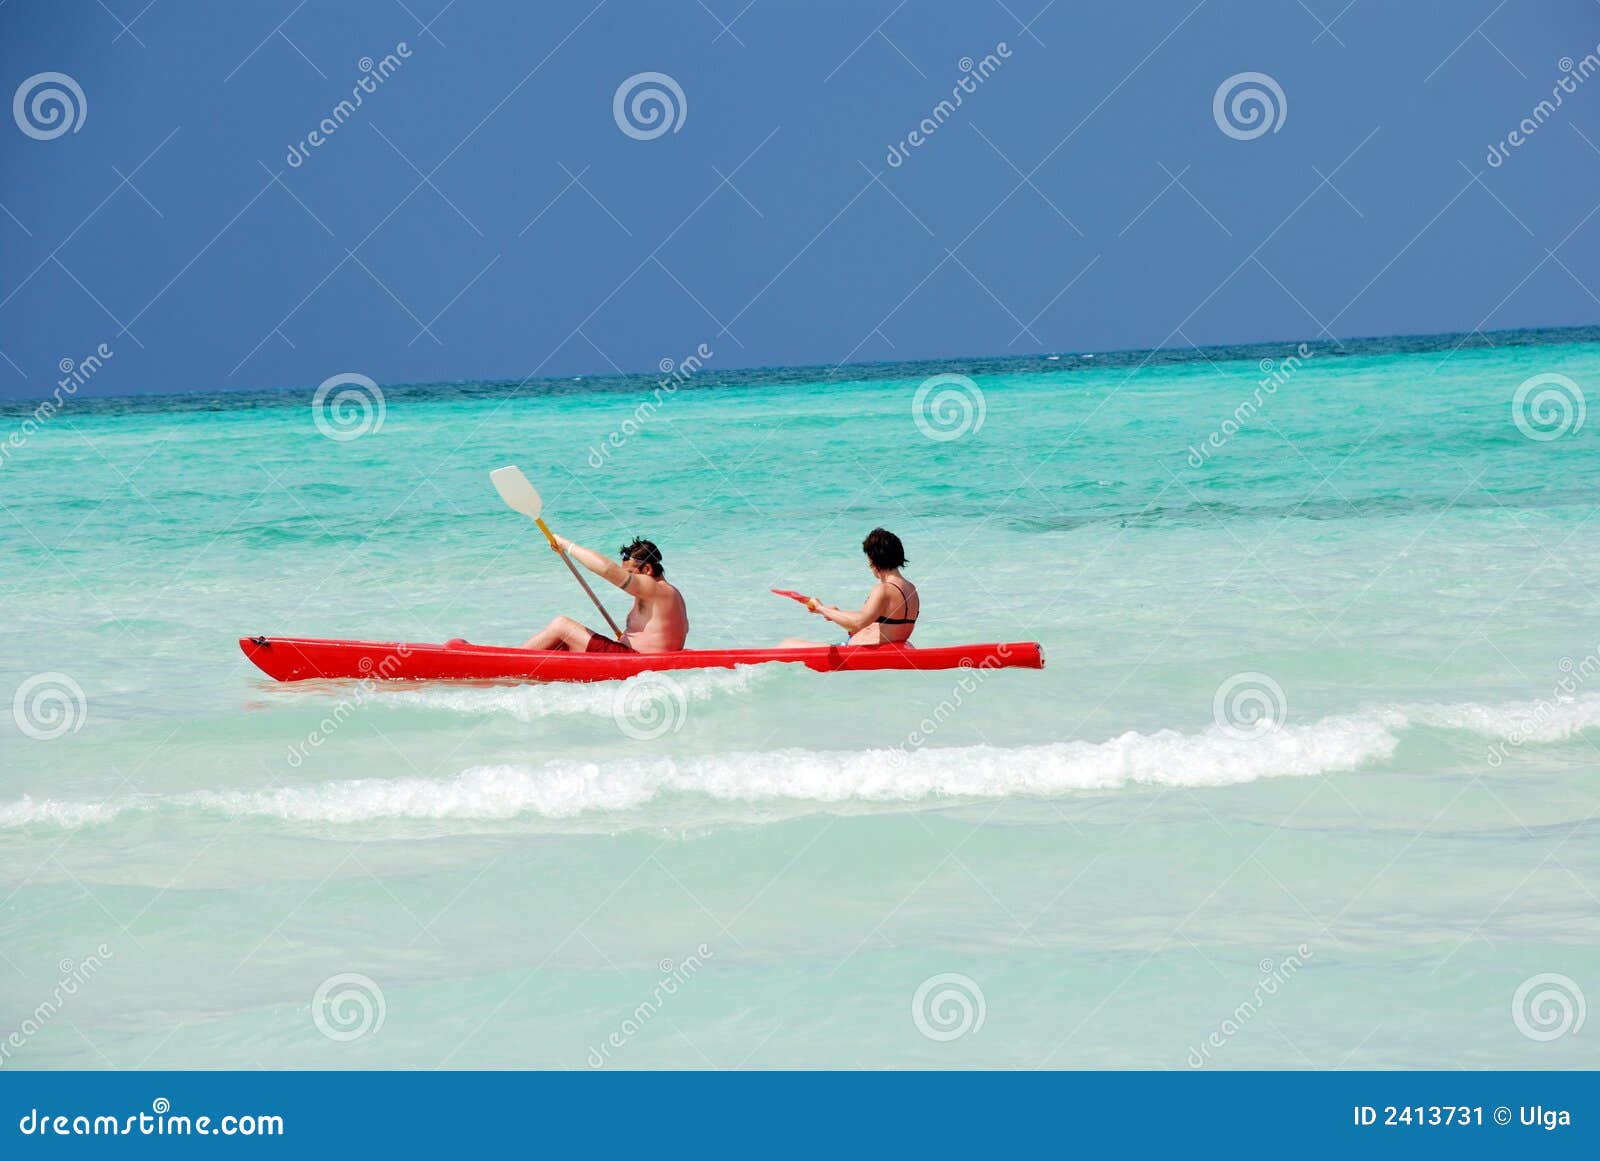 sea kayaking clipart - photo #48